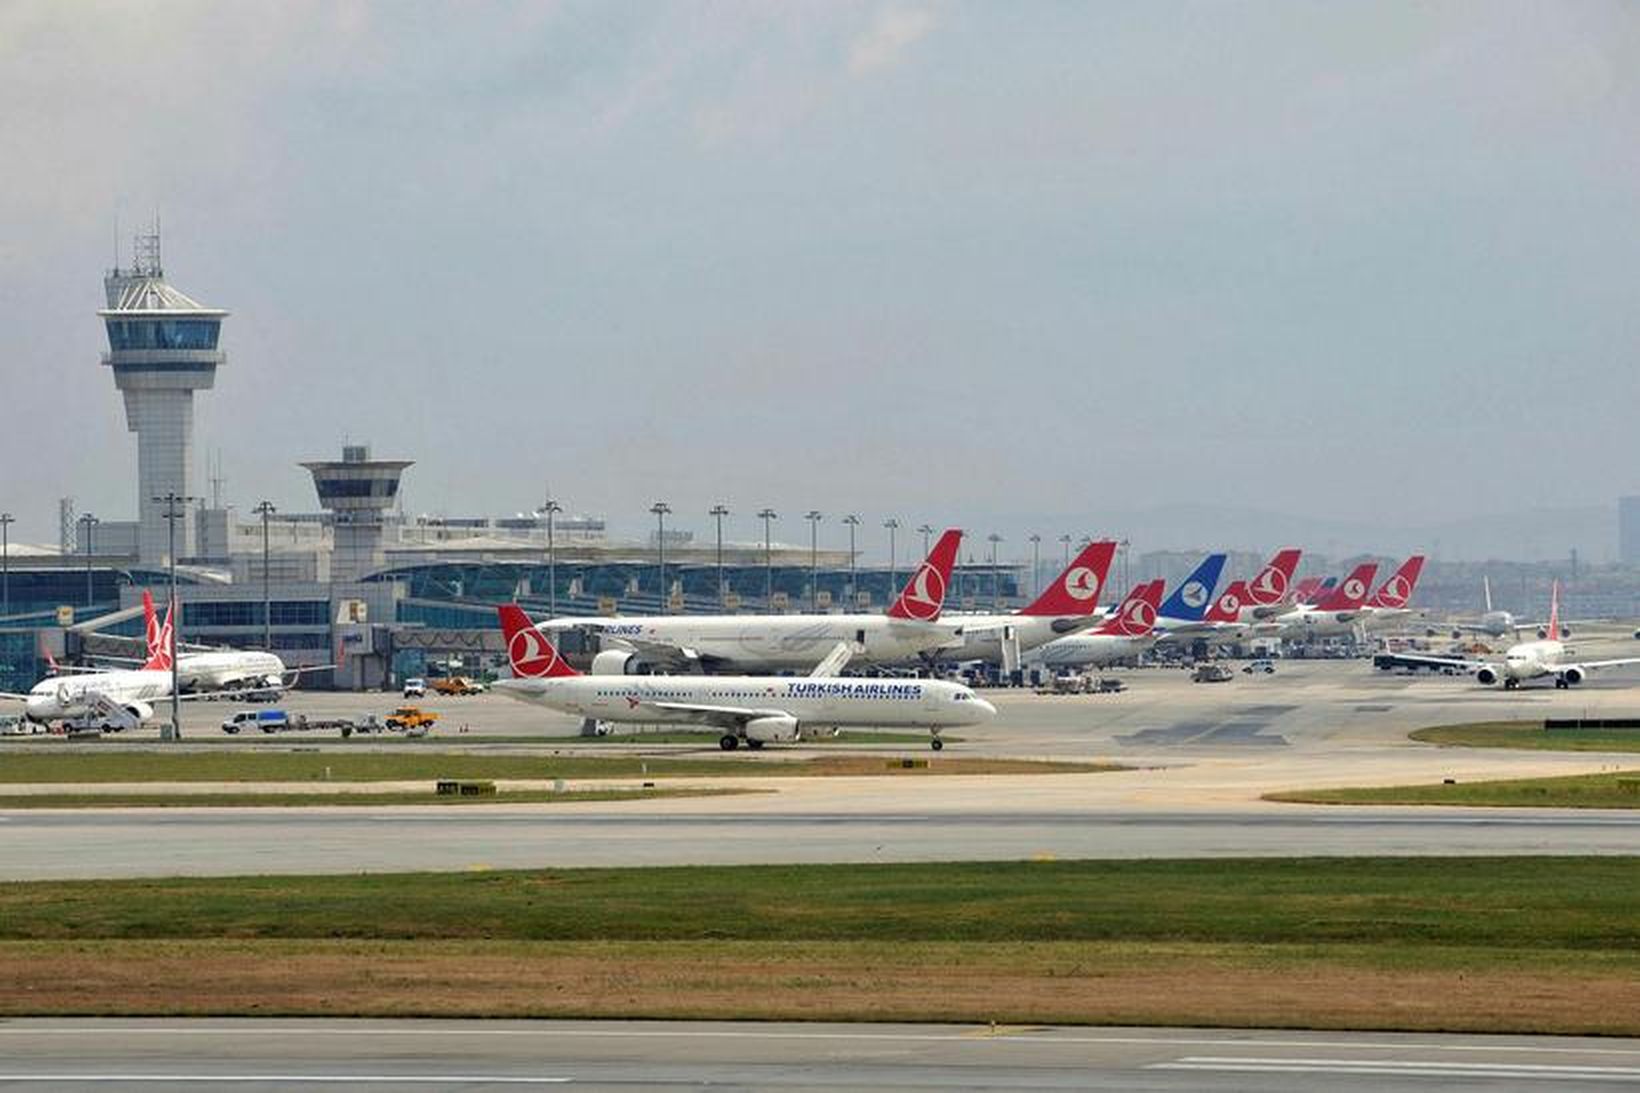 211 starfsmönnum Turkish Airlines hefur verið sagt upp störfum vegna …